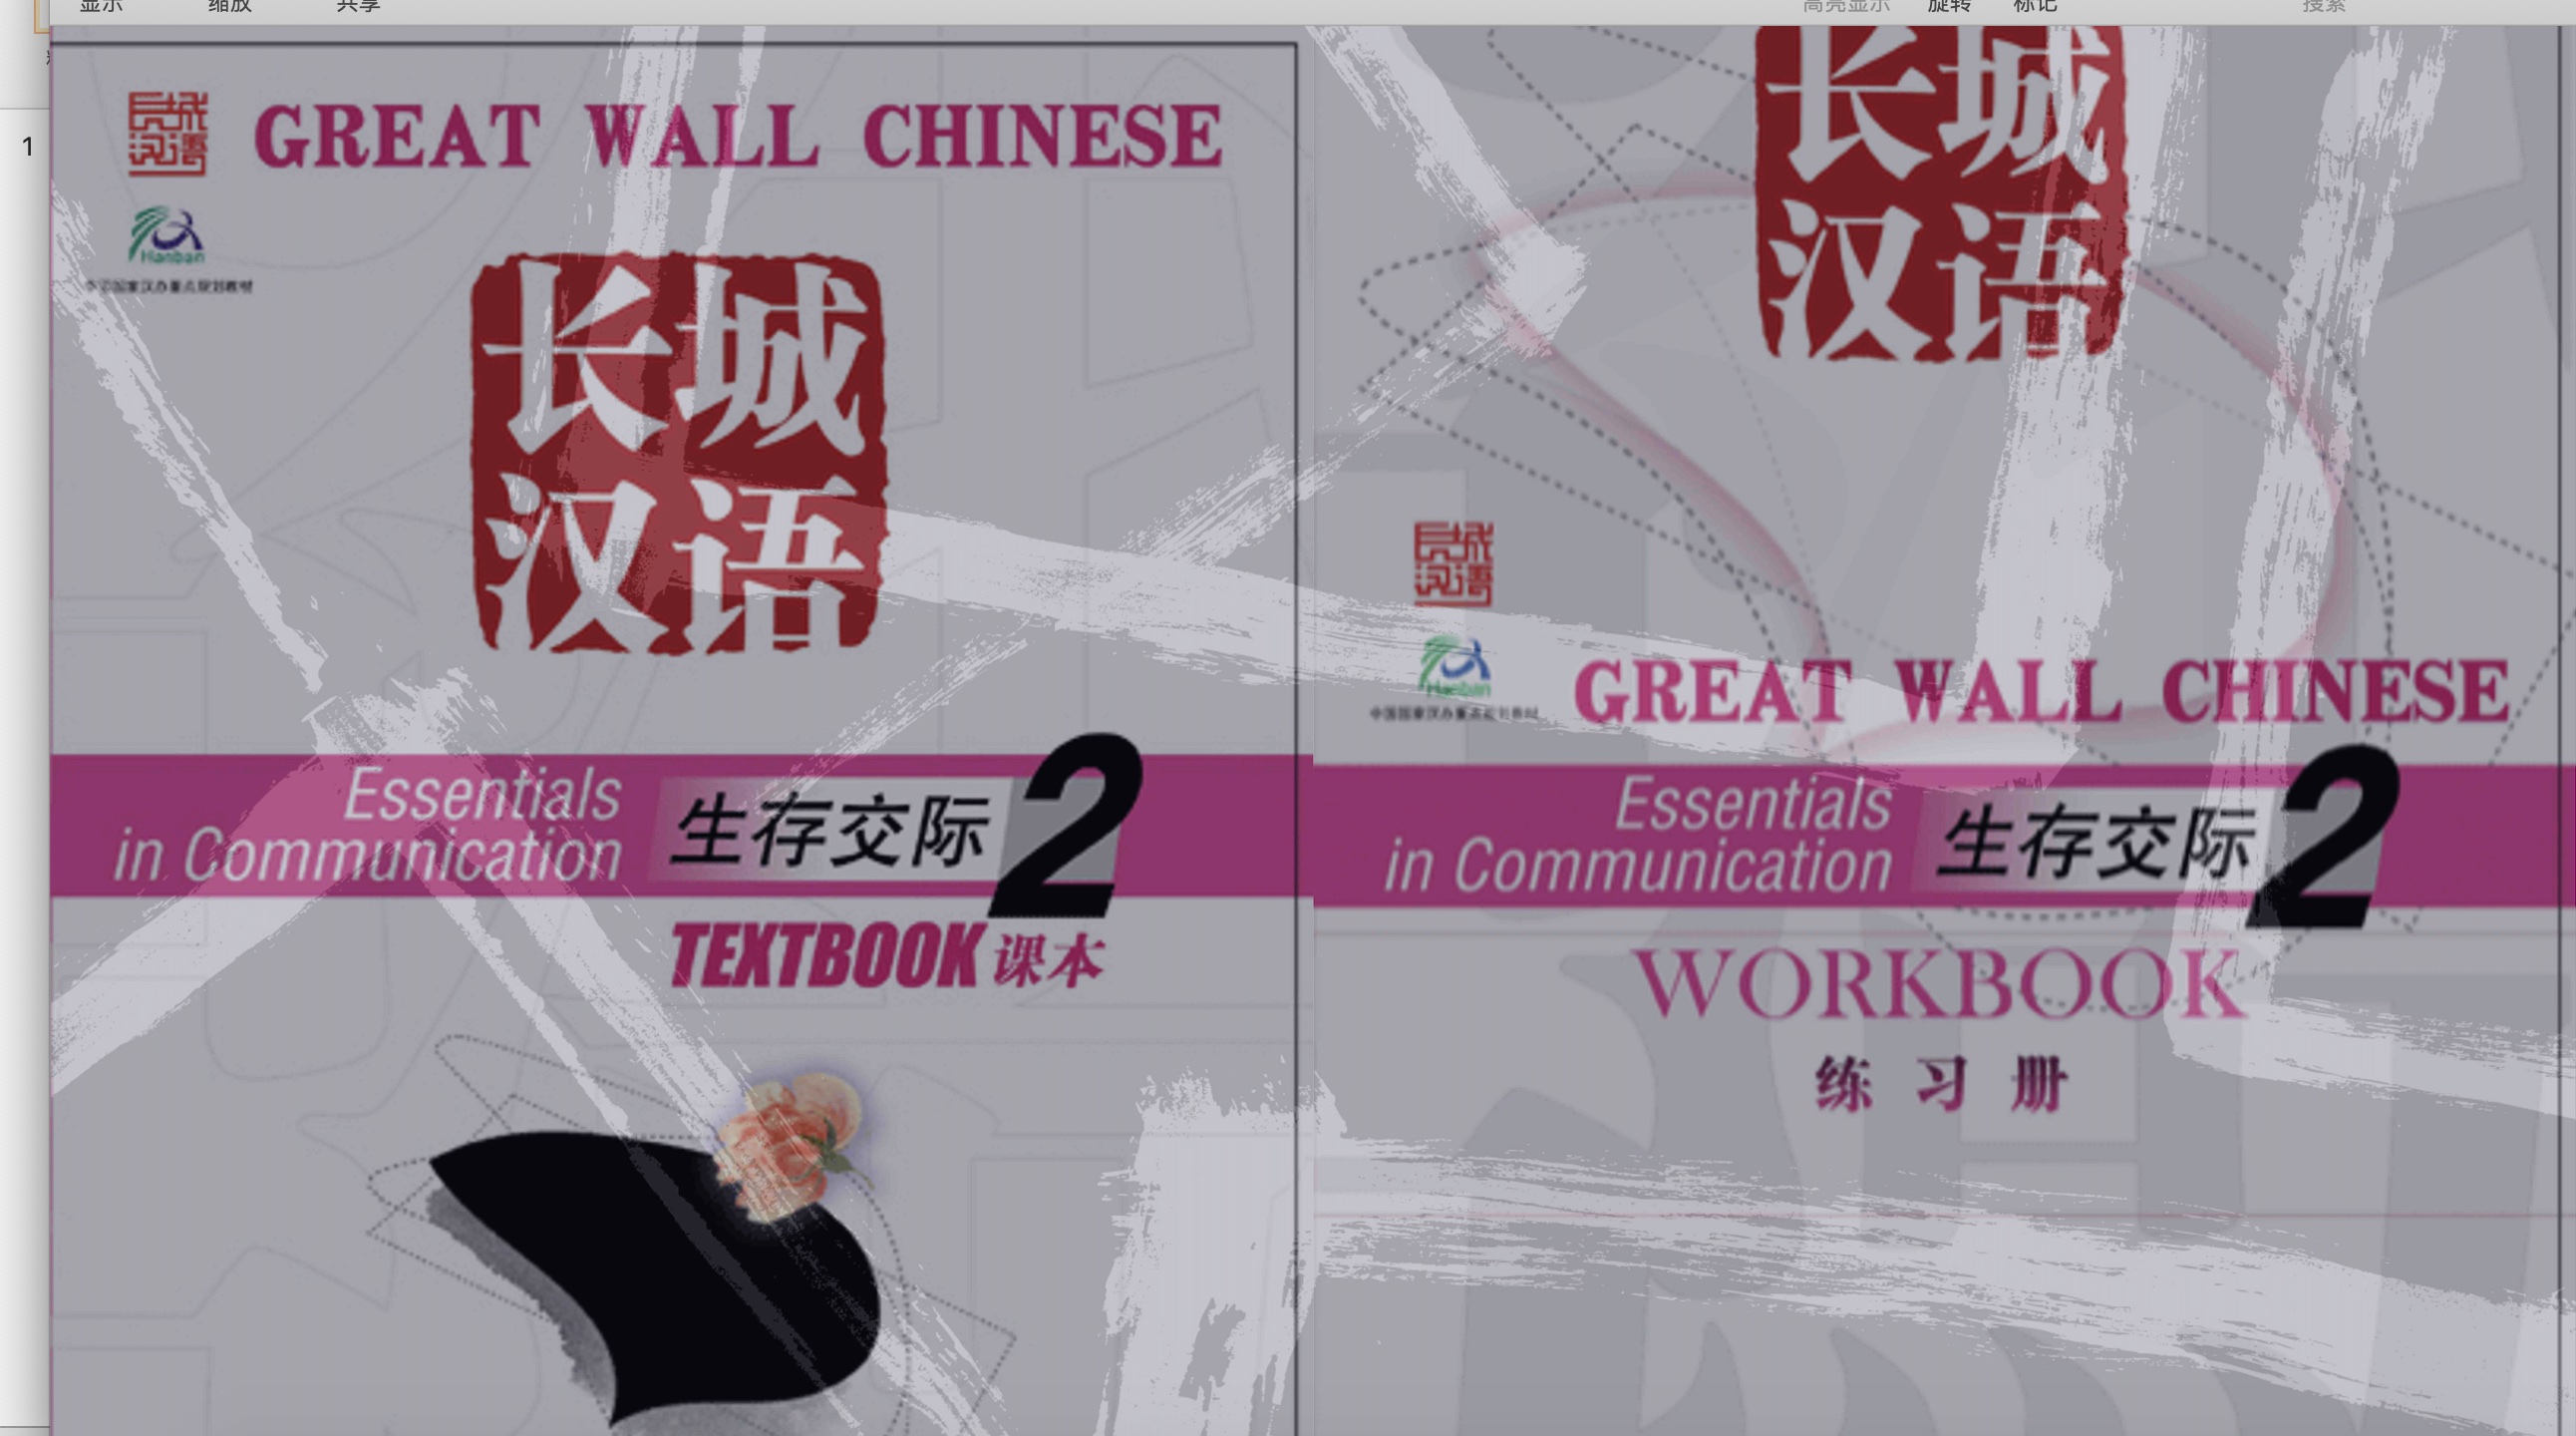 แบบเรียนภาษาจีน 长城汉语2课本+练习册  (Text+Workbook)